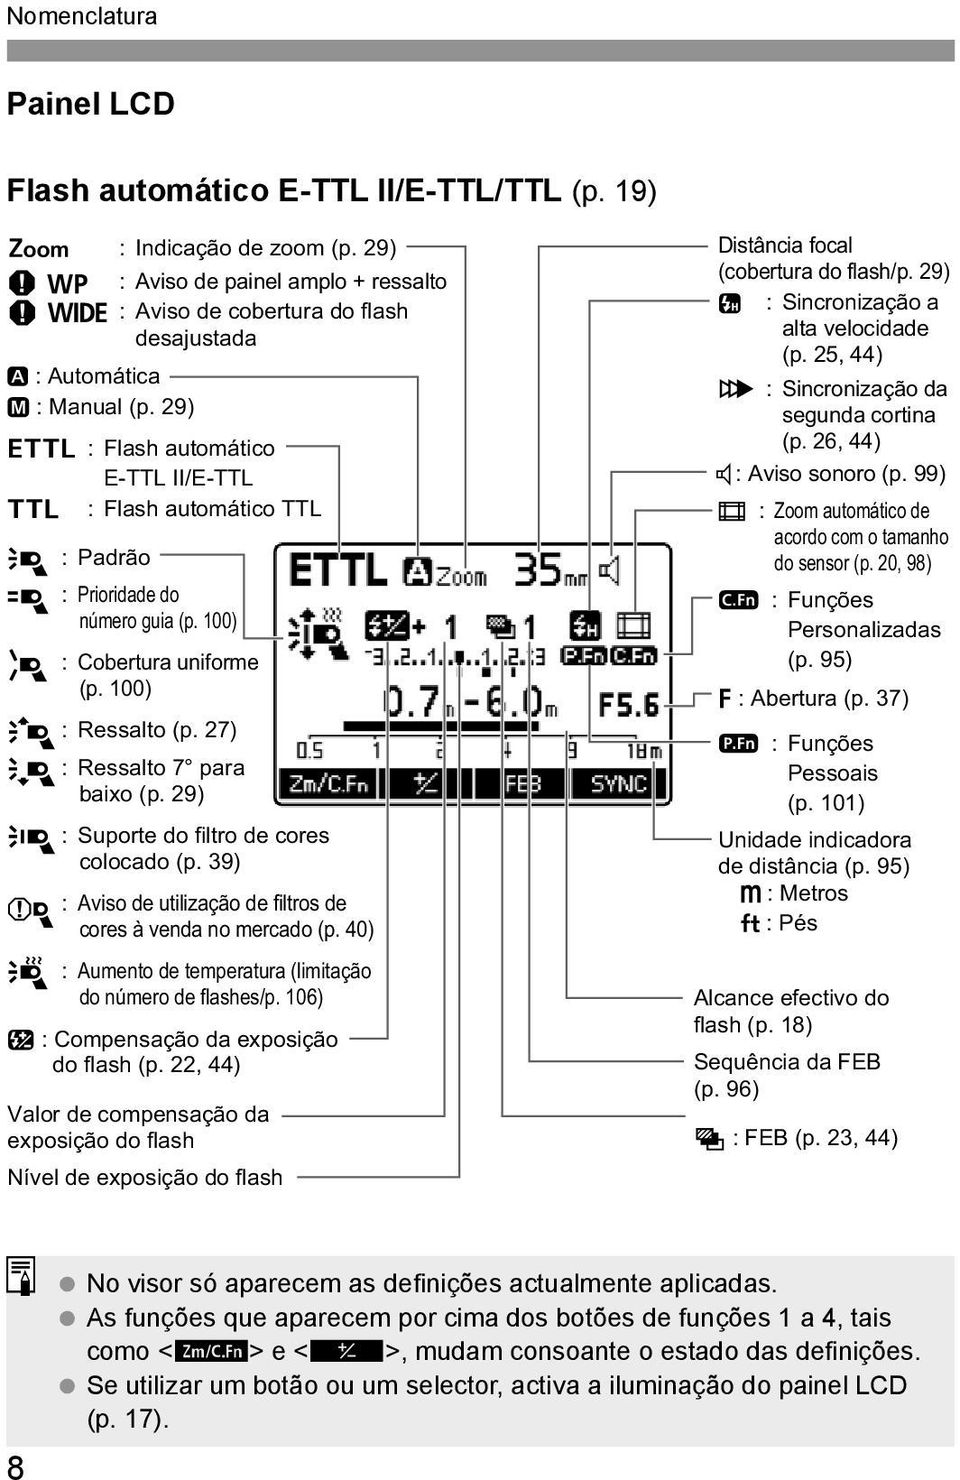 29) a : Flash automático E-TTL II/E-TTL b : Flash automático TTL j : Padrão k : Prioridade do número guia (p. 100) l : Cobertura uniforme (p. 100) m : Ressalto (p. 27) n : Ressalto 7 para baixo (p.